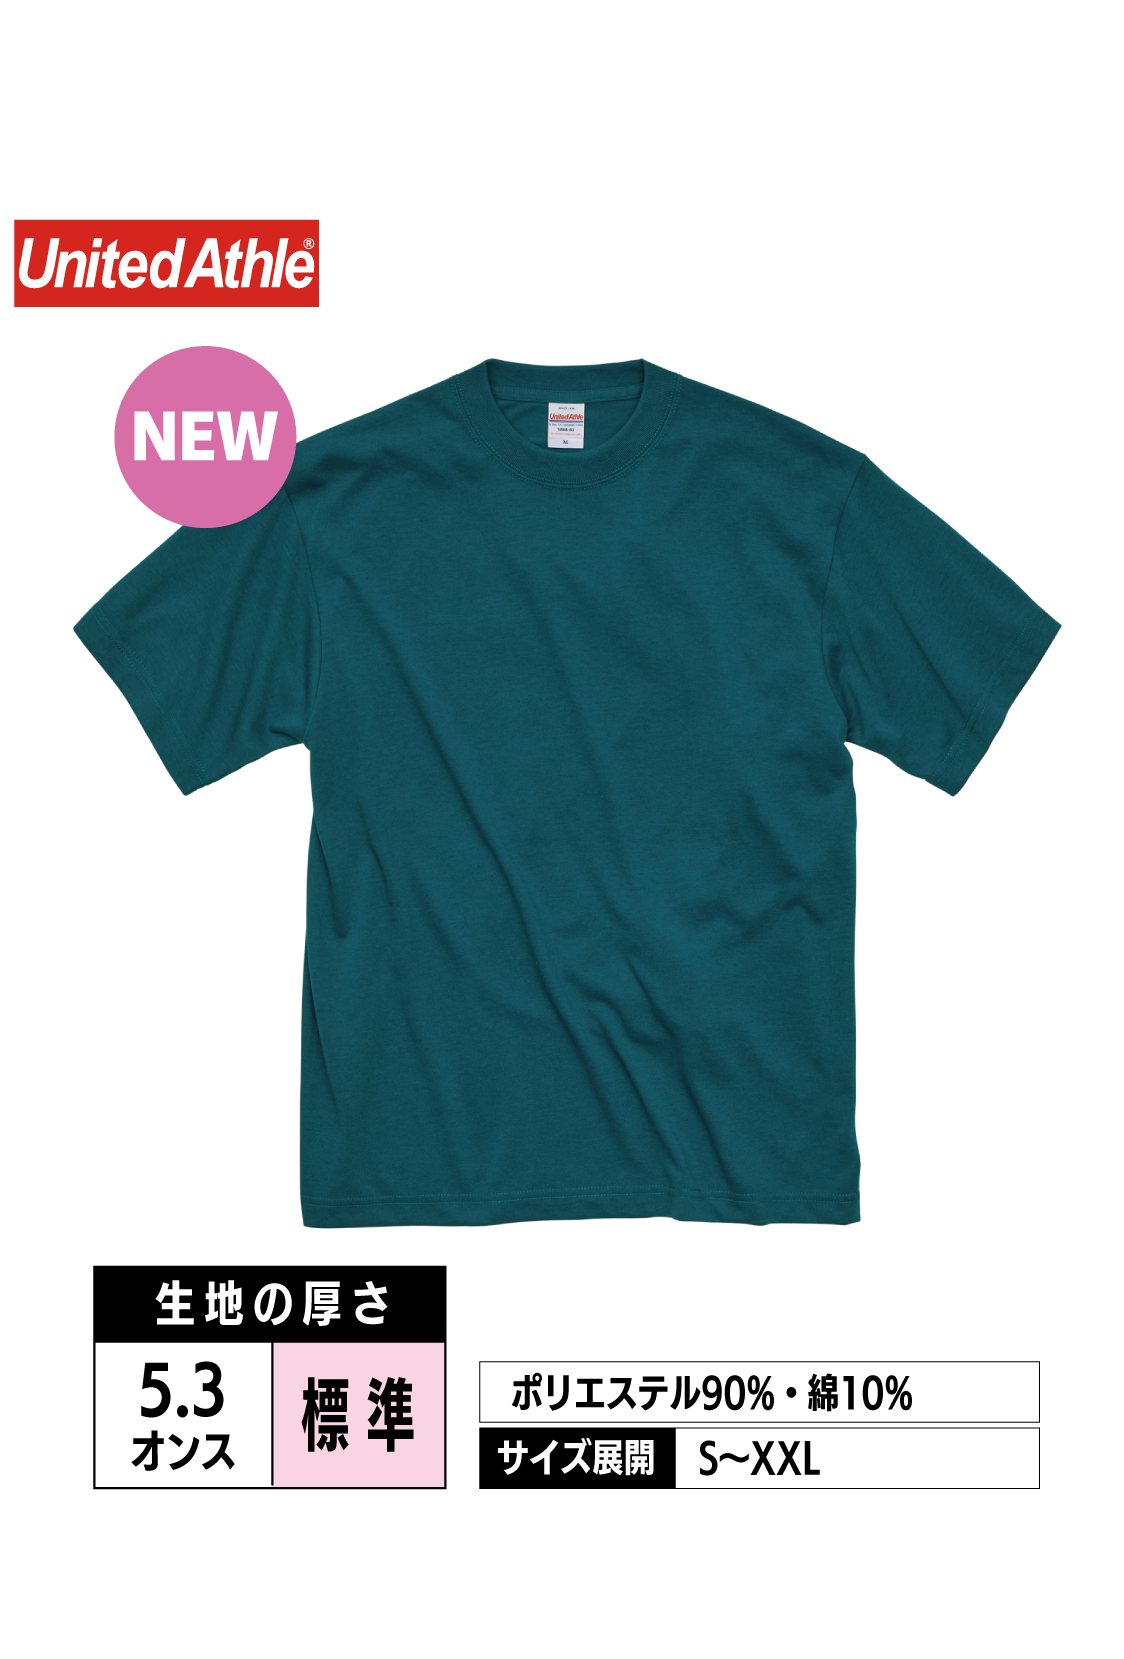 【NEW】5888-01｜5.3オンス T/C バーサタイル Tシャツ【全6色】United Athle